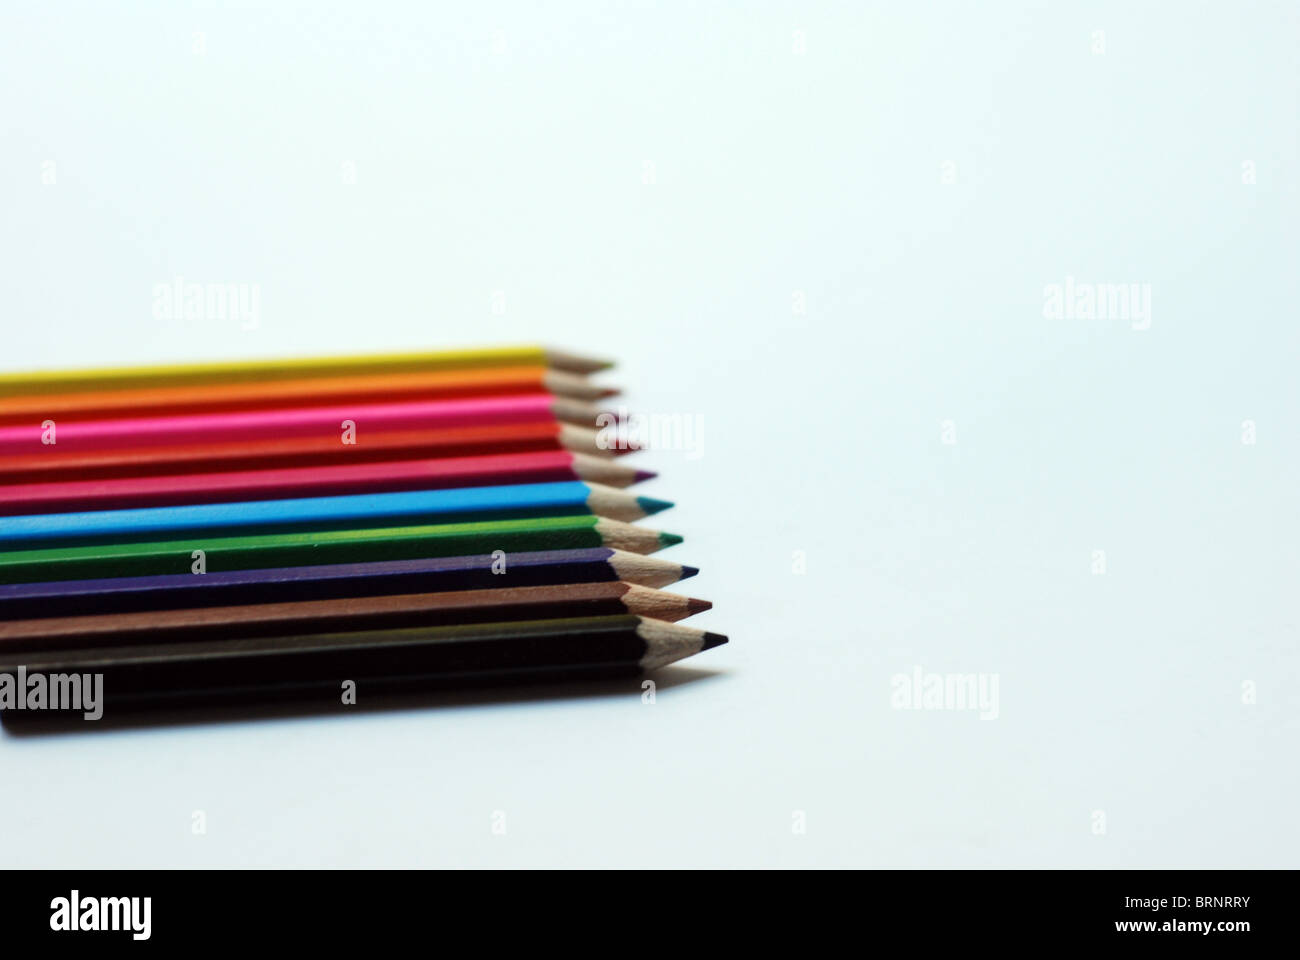 Una collezione di matite colorate intaglio con uno sfondo bianco - giallo, arancione, rosa, rosso, blu, verde, viola, marrone, nero Foto Stock